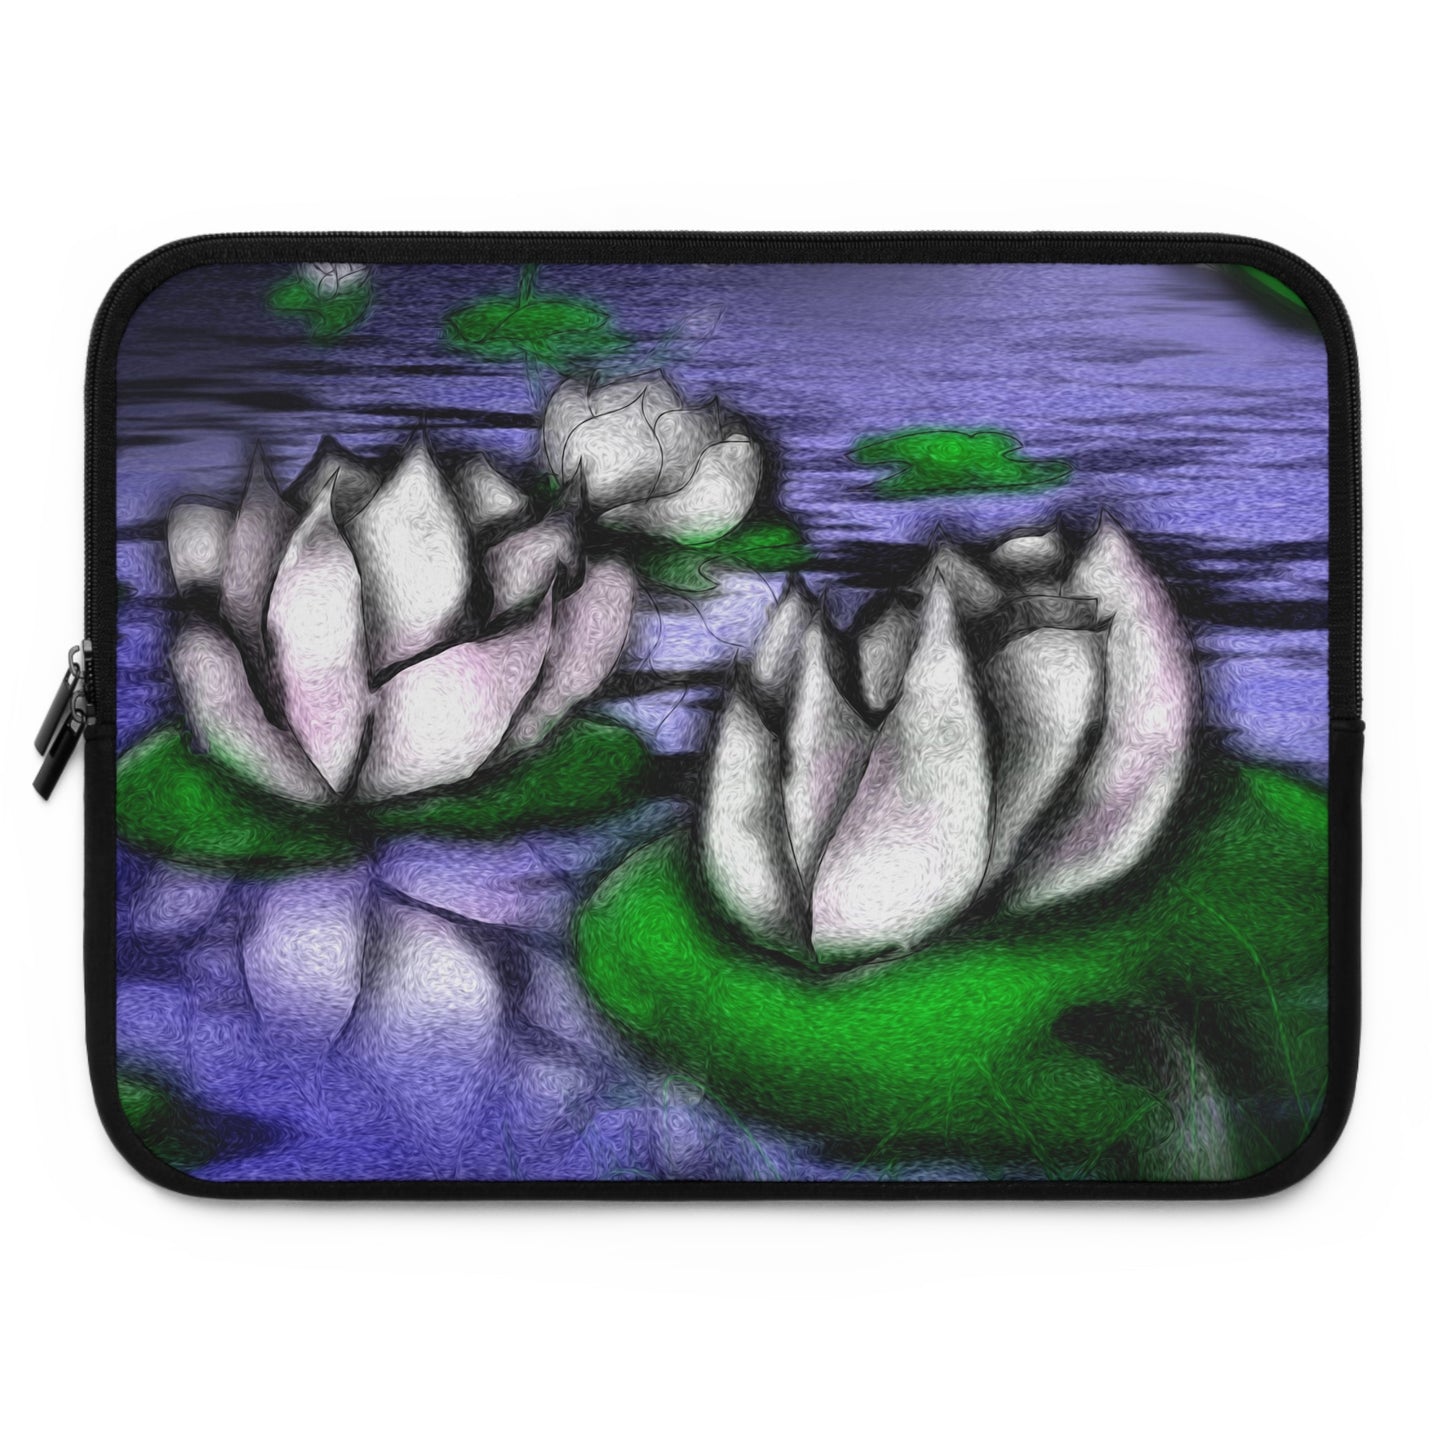 Little Lotus Pond Laptop Sleeve